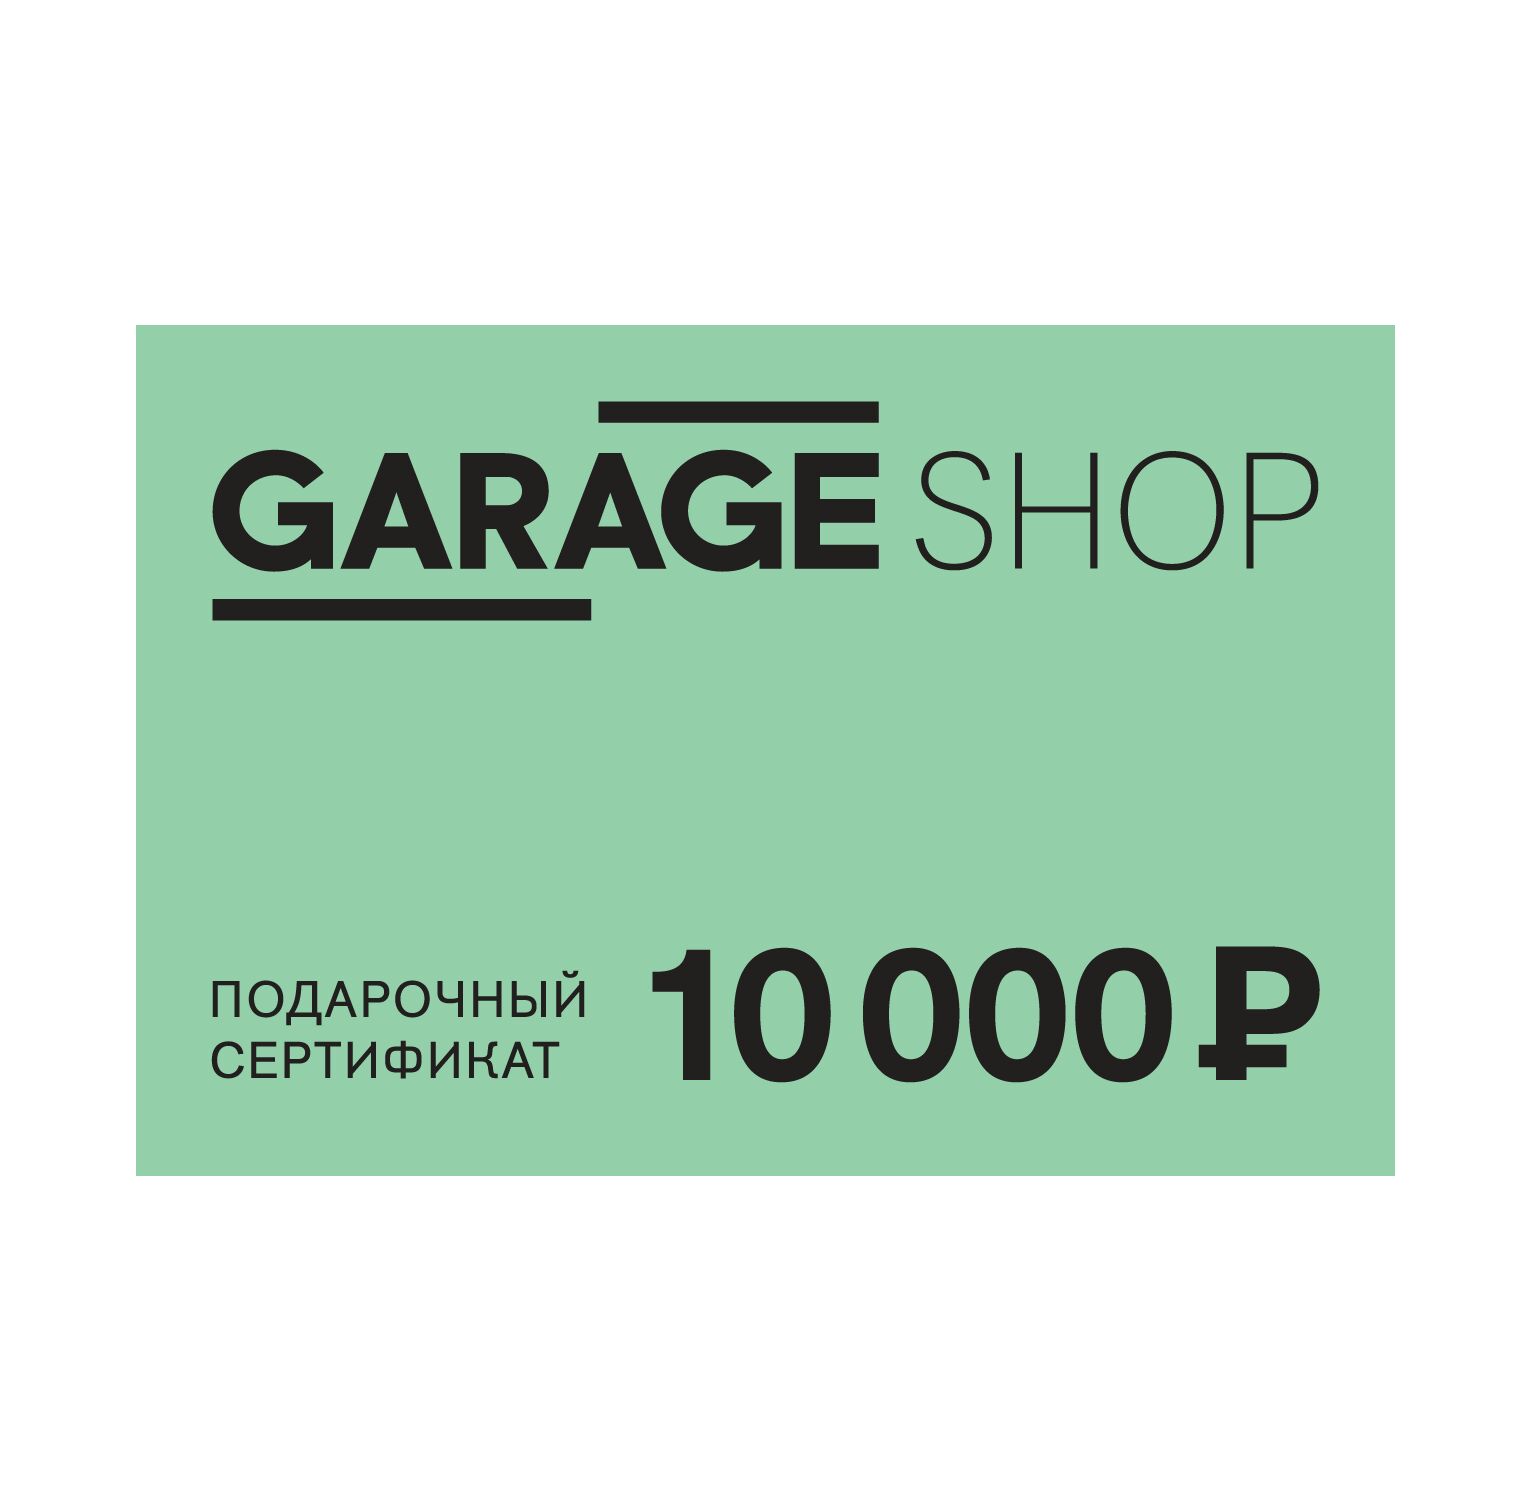 Электронный сертификат 10000 рублей